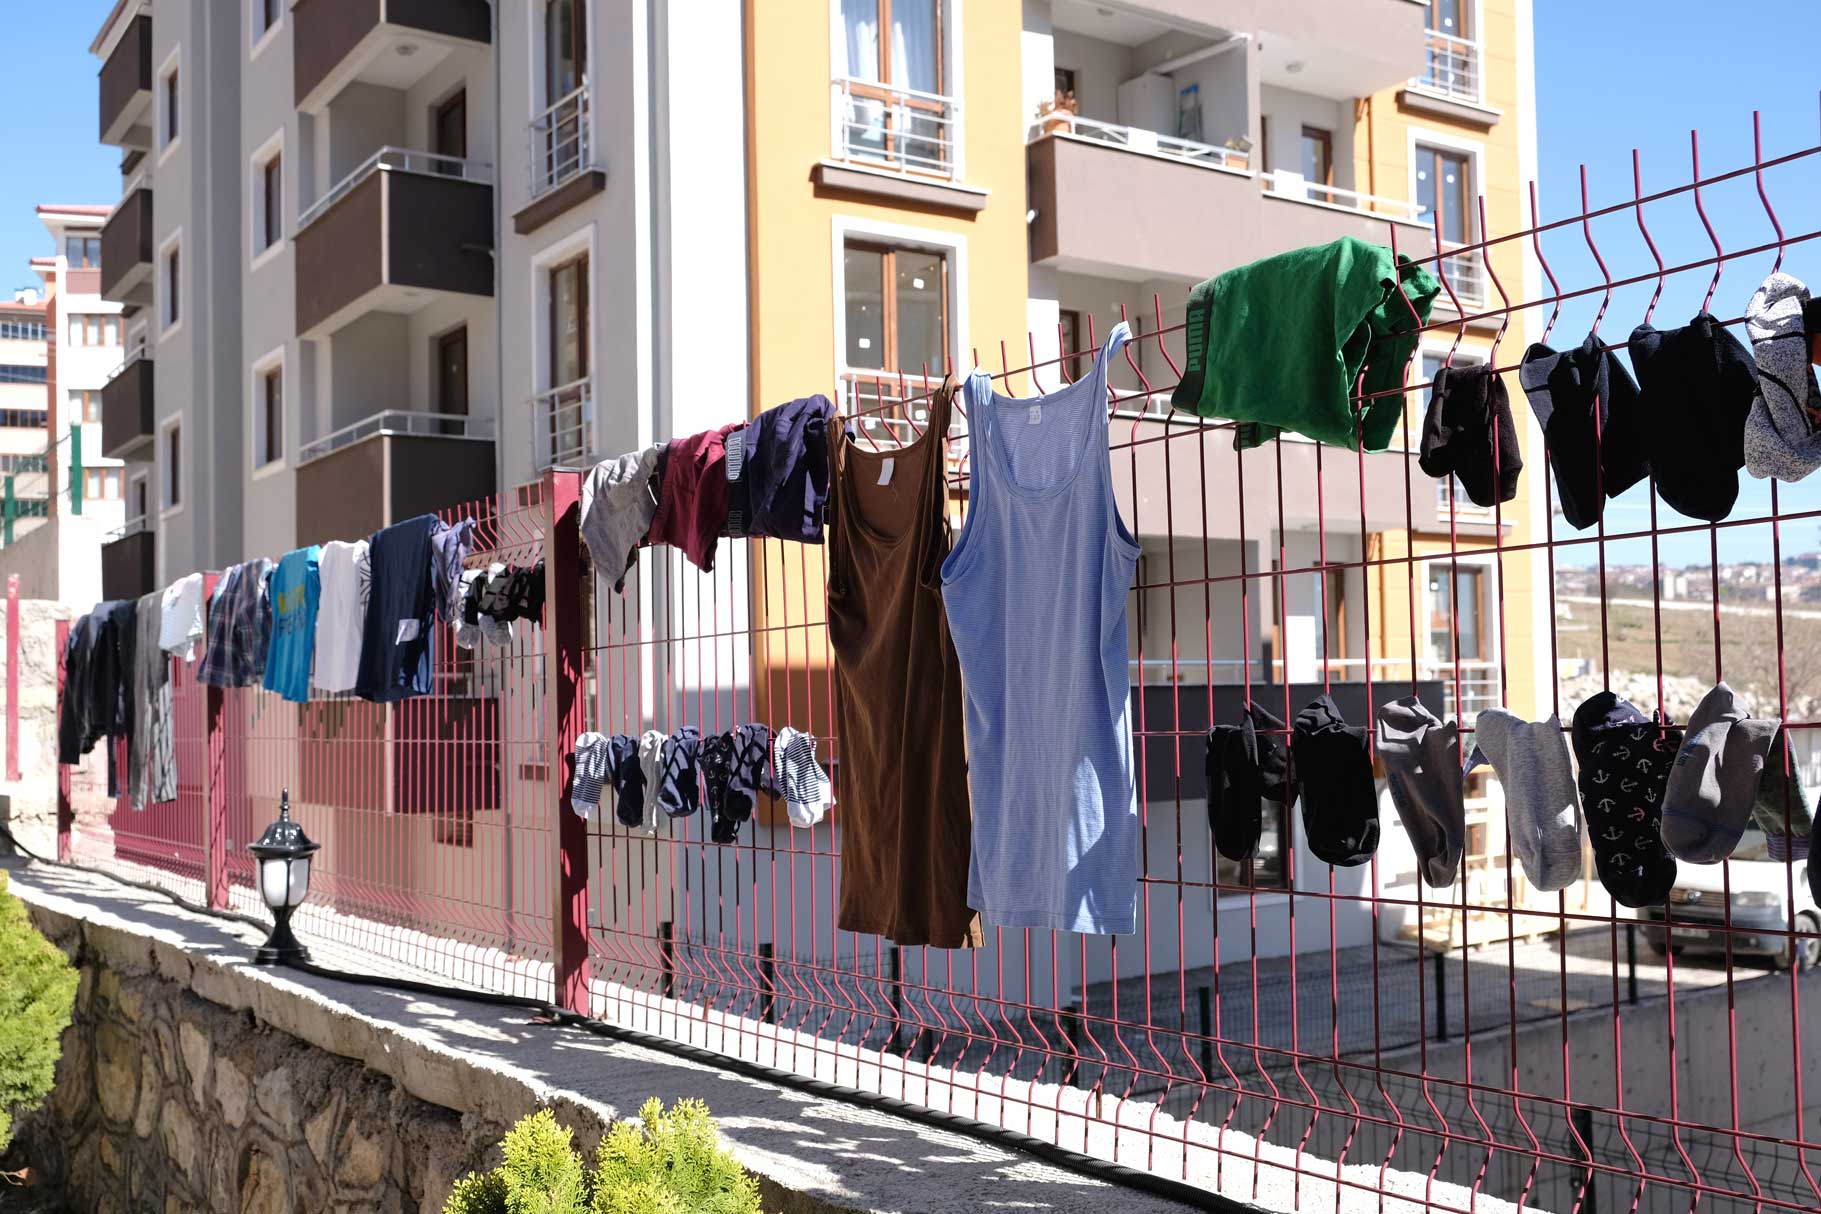 Wäsche hängt zum Trocknen an einem Zaun